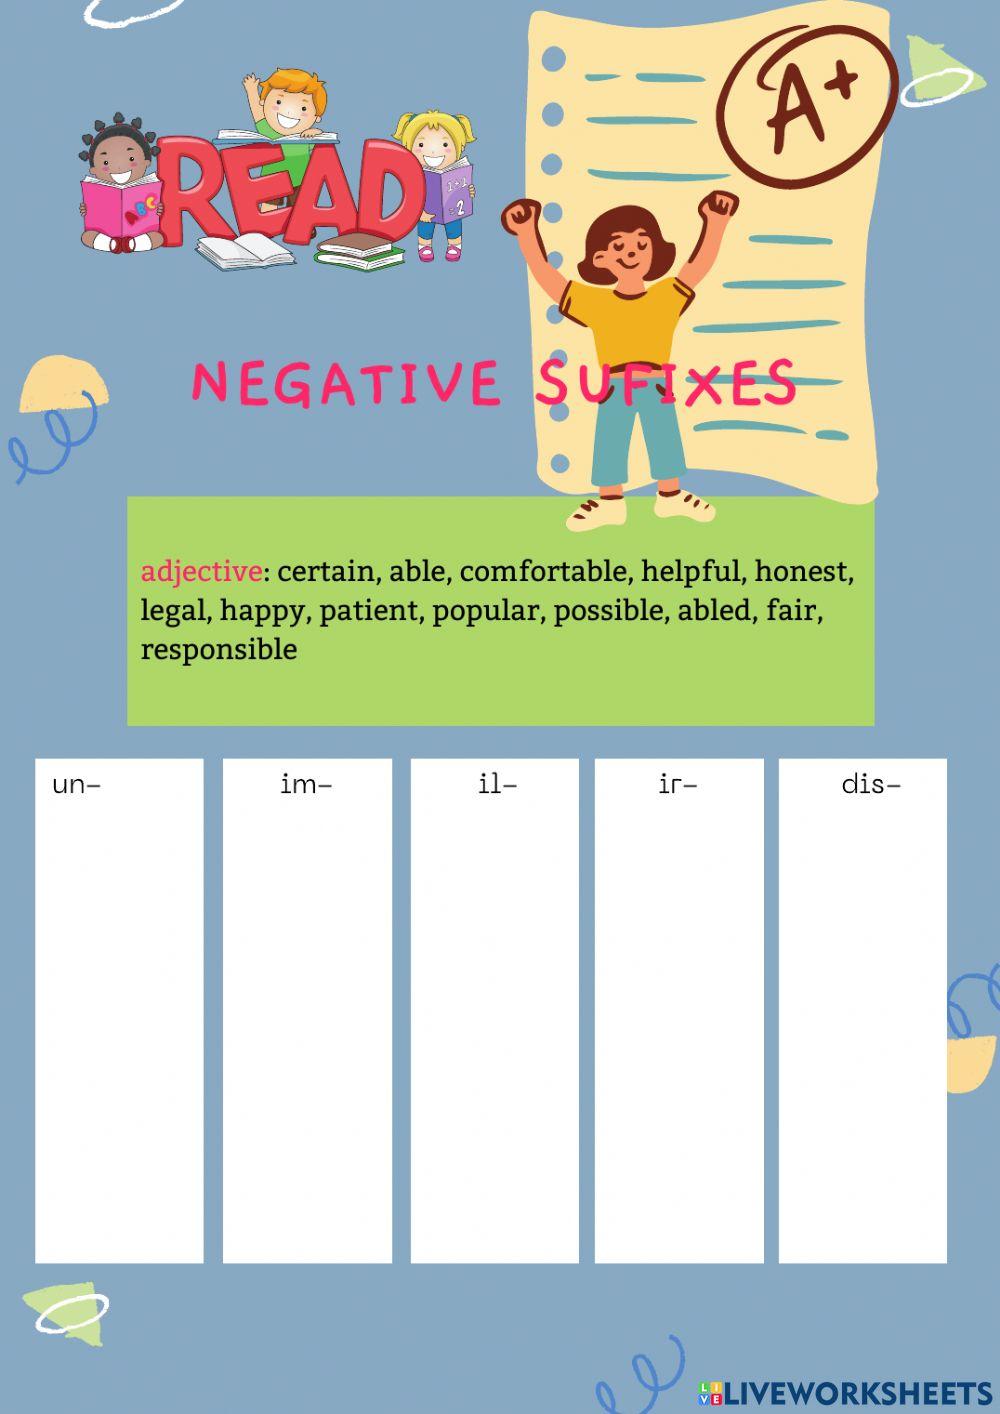 Negative prefixes